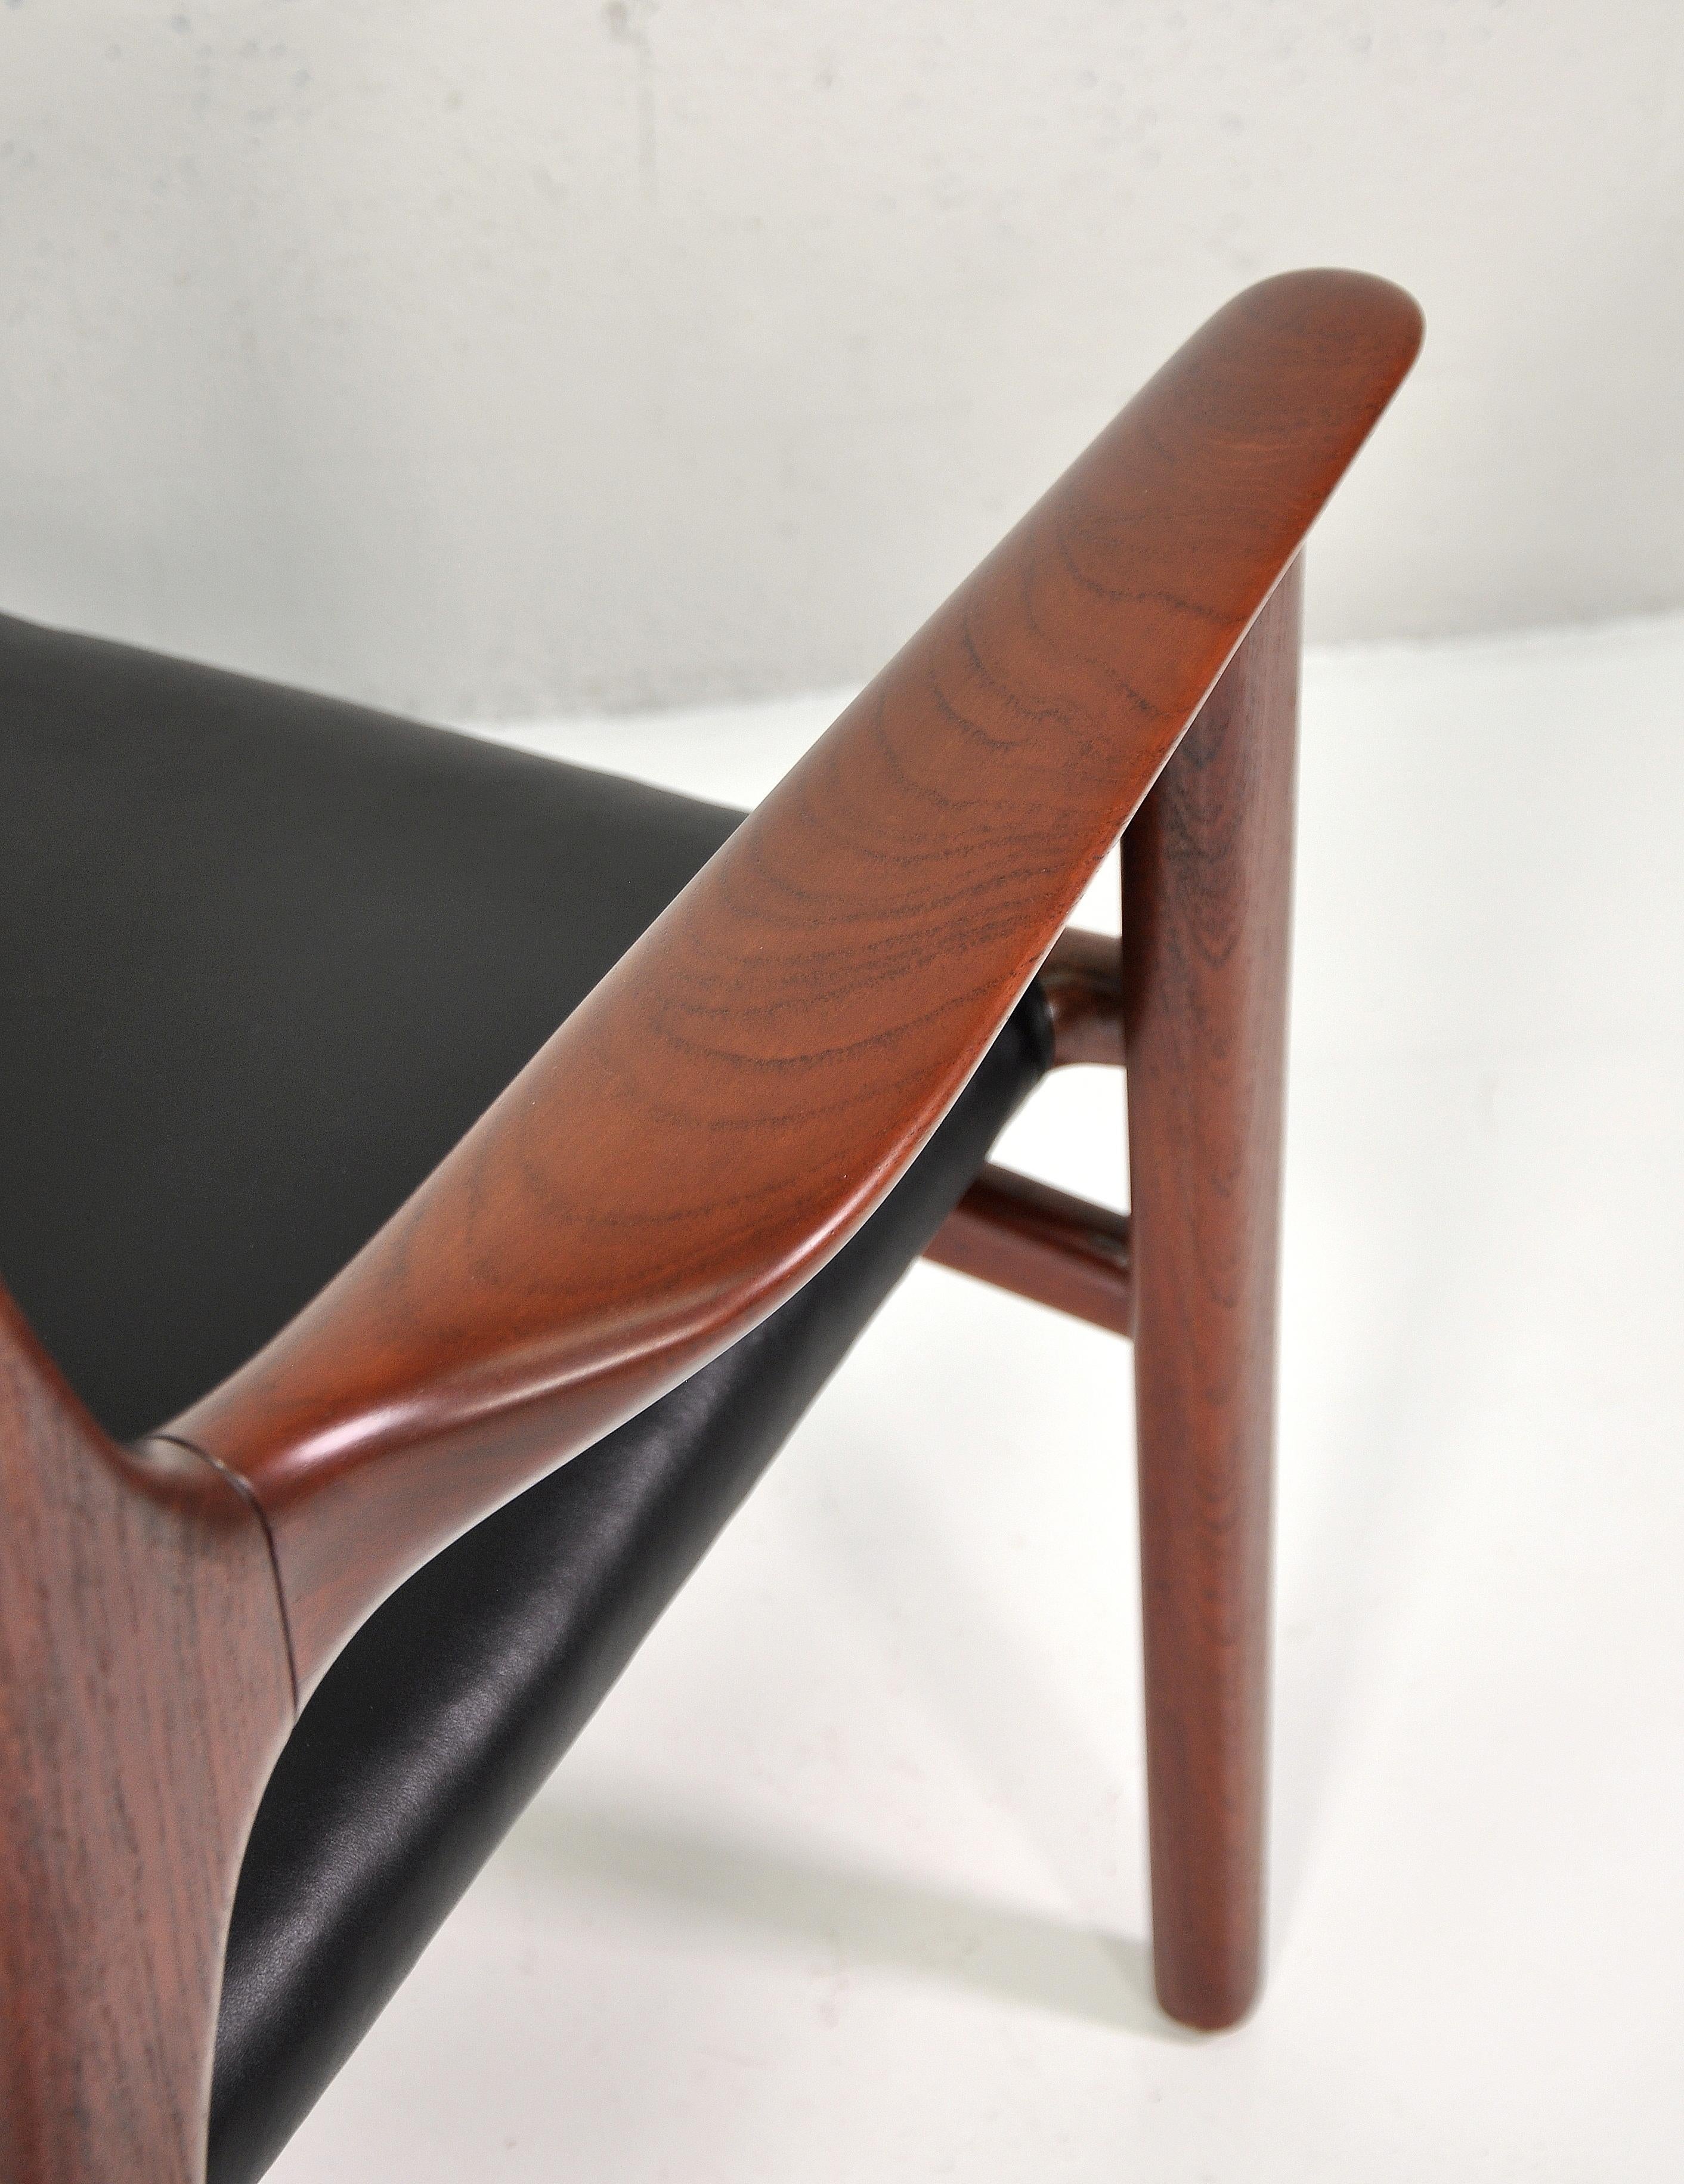 Vintage-Sessel, entworfen von Hans Wegner und ausgeführt von Johannes Hansen in den 1950er Jahren. Seltener Loungesessel Modell JH-515. Echtes, weiches, schwarzes Leder in ausgezeichnetem Zustand. Der prächtig geformte, offene Teakholzrahmen weist